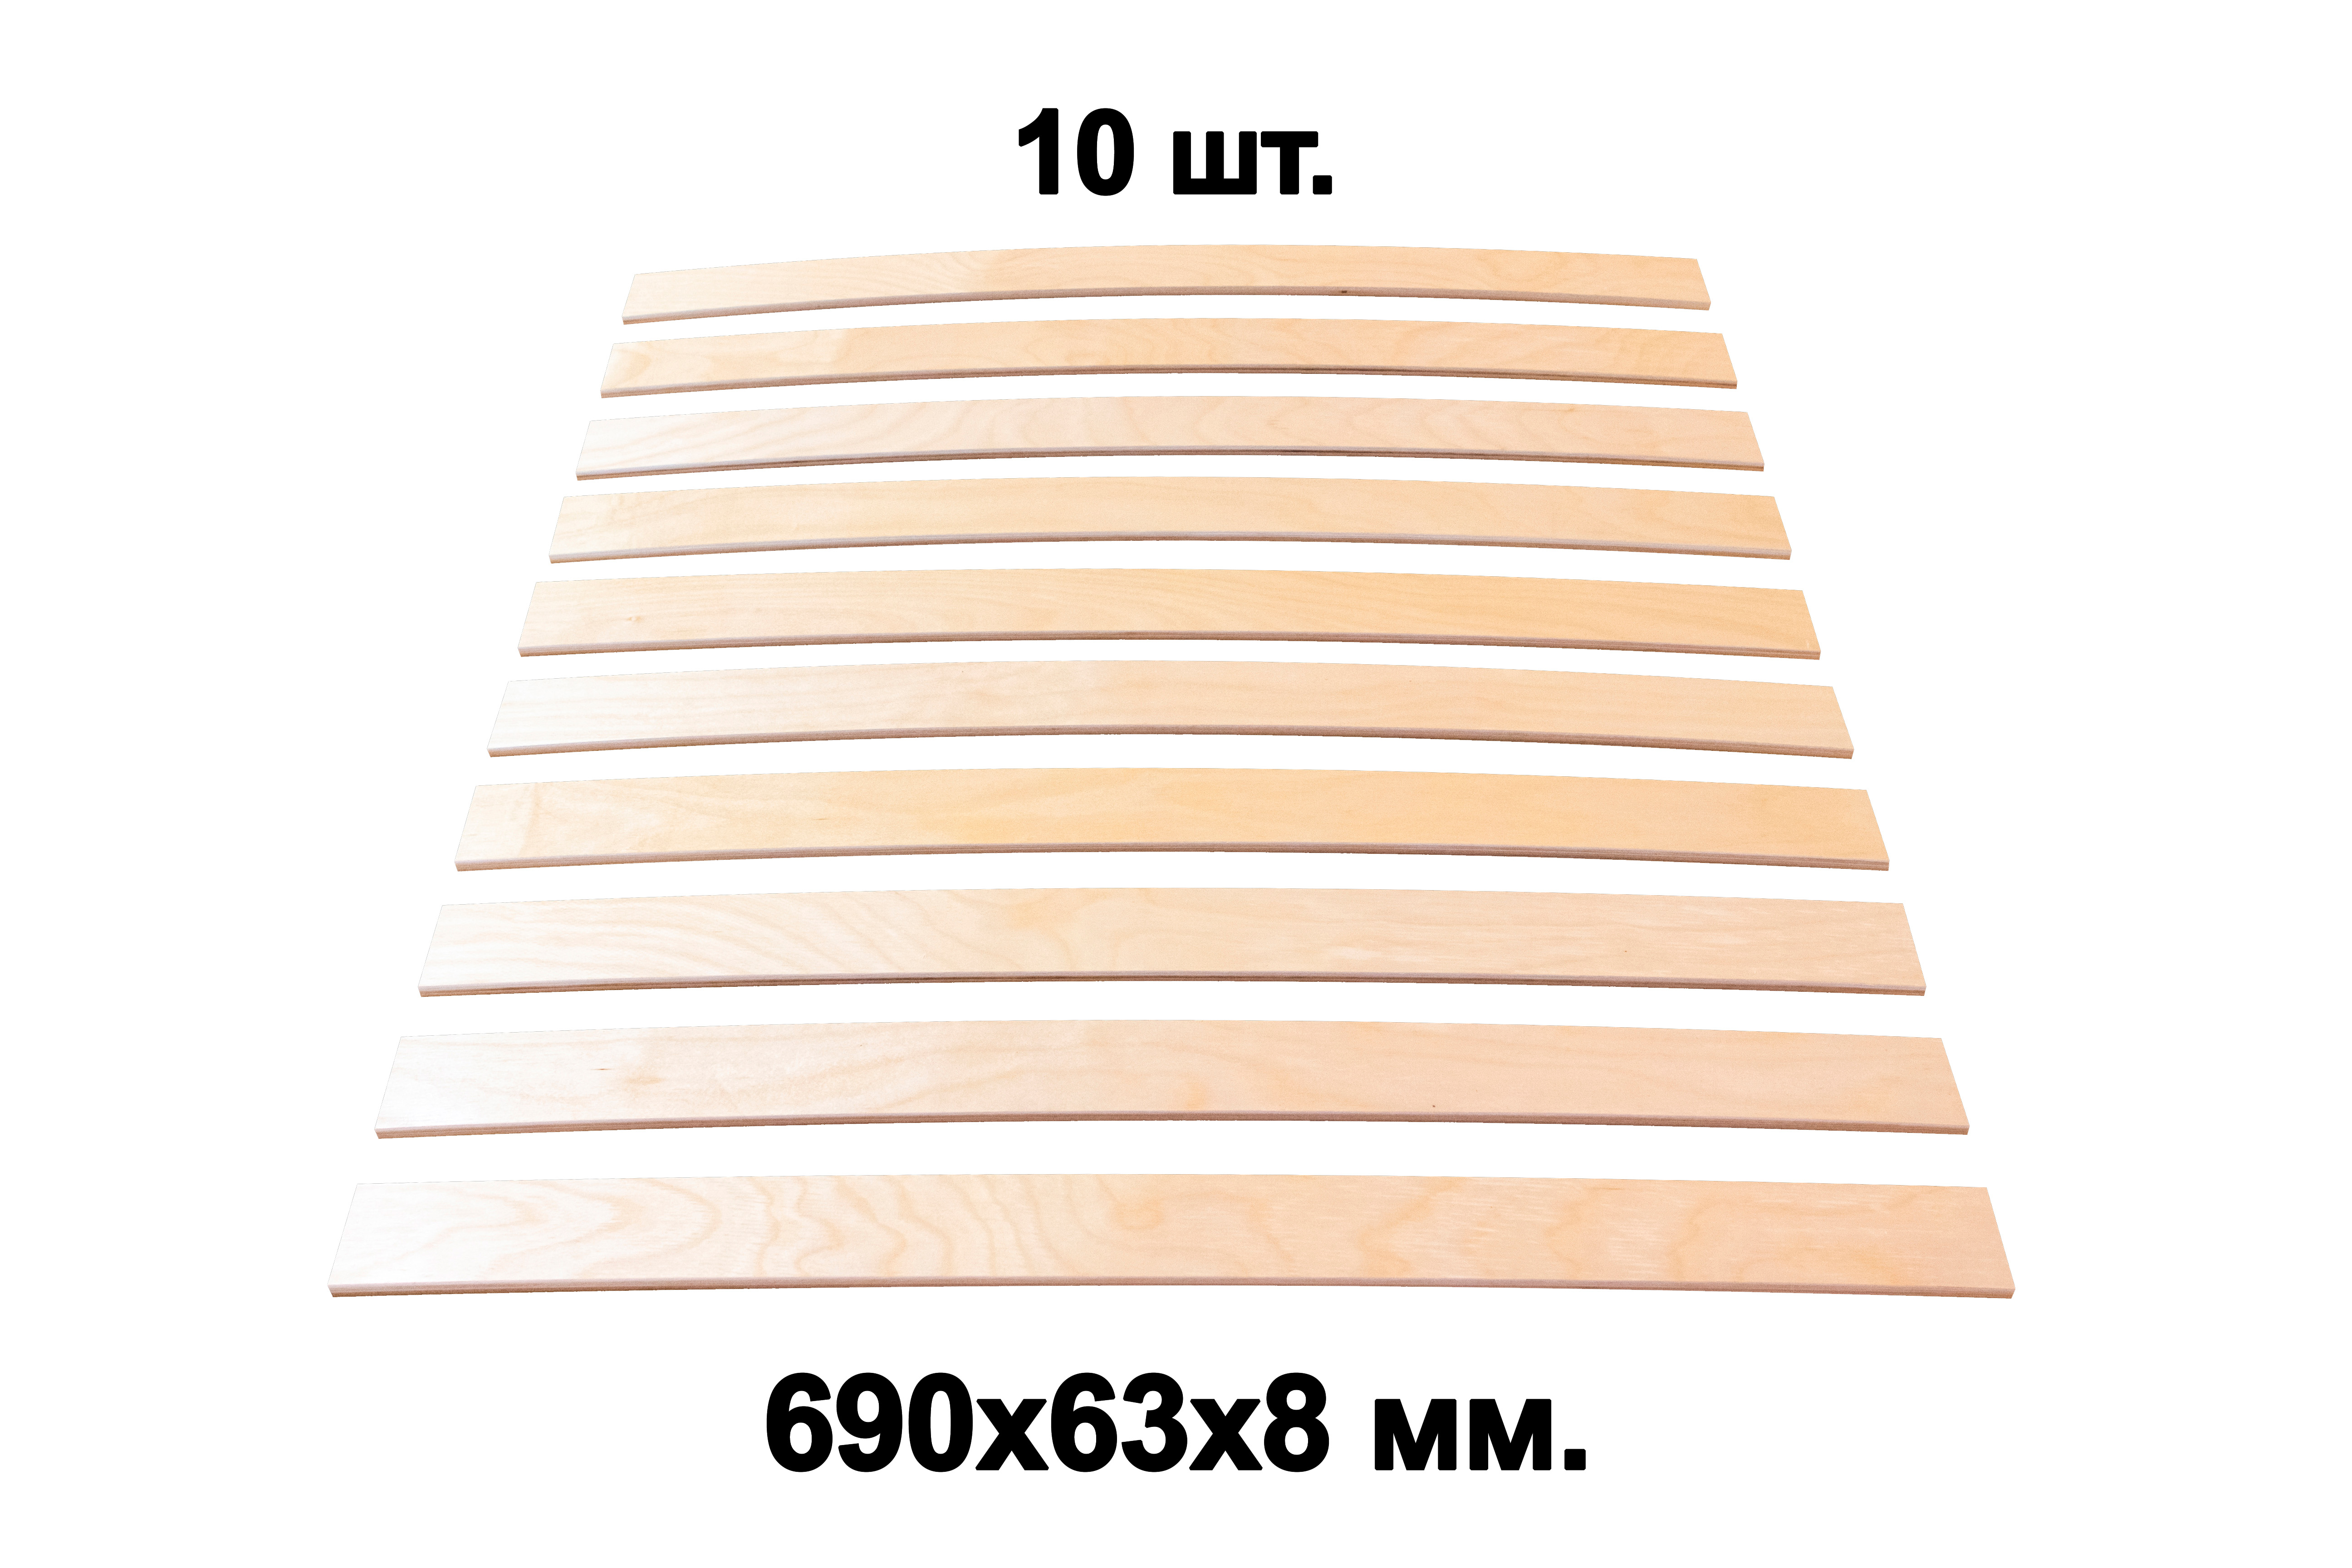 Комплект планок гнутоклееных  690х63х8 ГГл (упаковка по 10шт.)